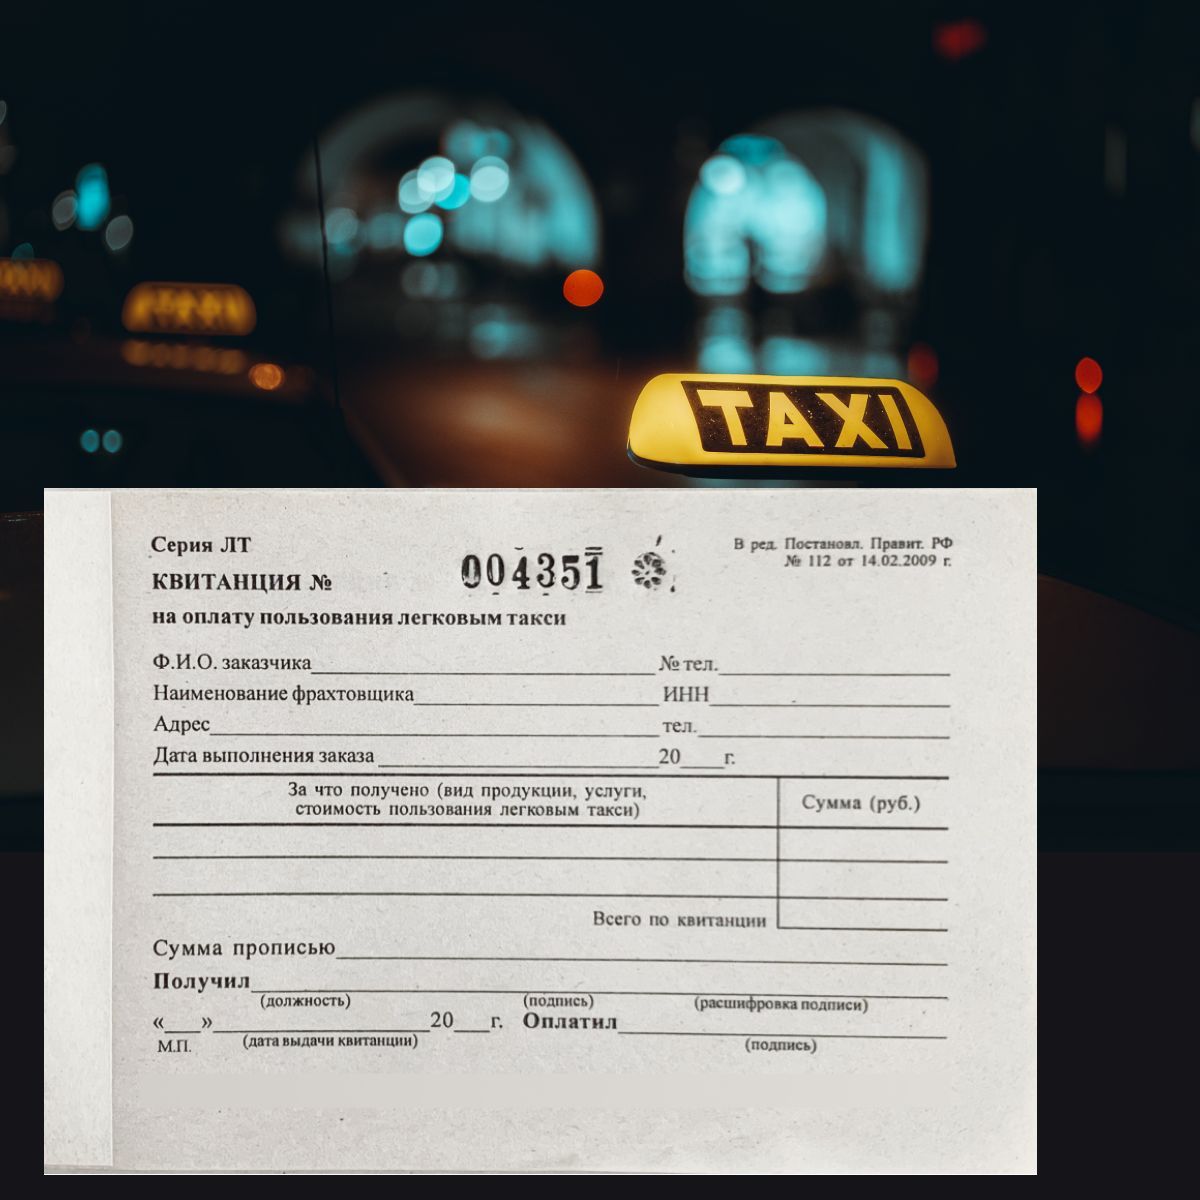 Сведения о записи легкового такси. Квитанция на оплату пользования легковым такси. Условия оплаты за пользование легковым такси.